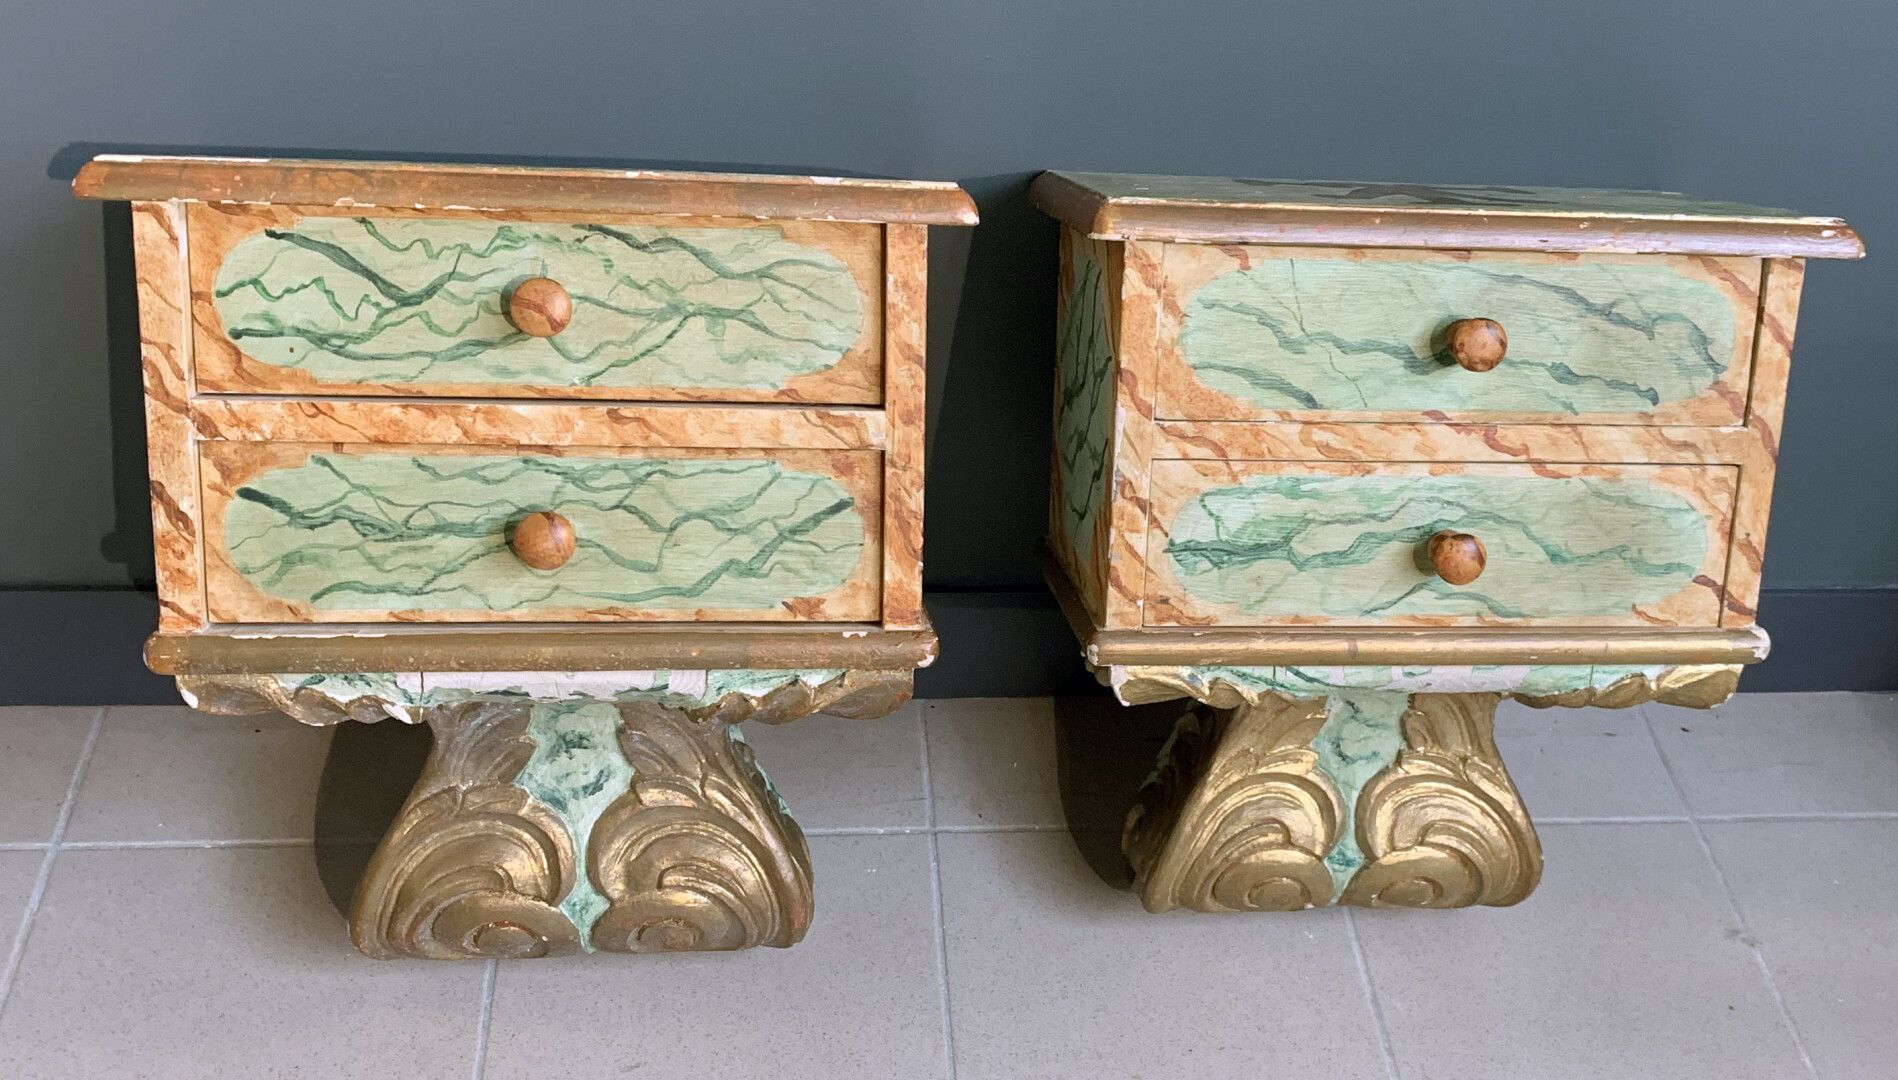 Null 一对仿大理石和镀金涡纹的彩绘木质床头柜。

意大利风格。现代

高：51 - 宽：45 - 深：26.5厘米